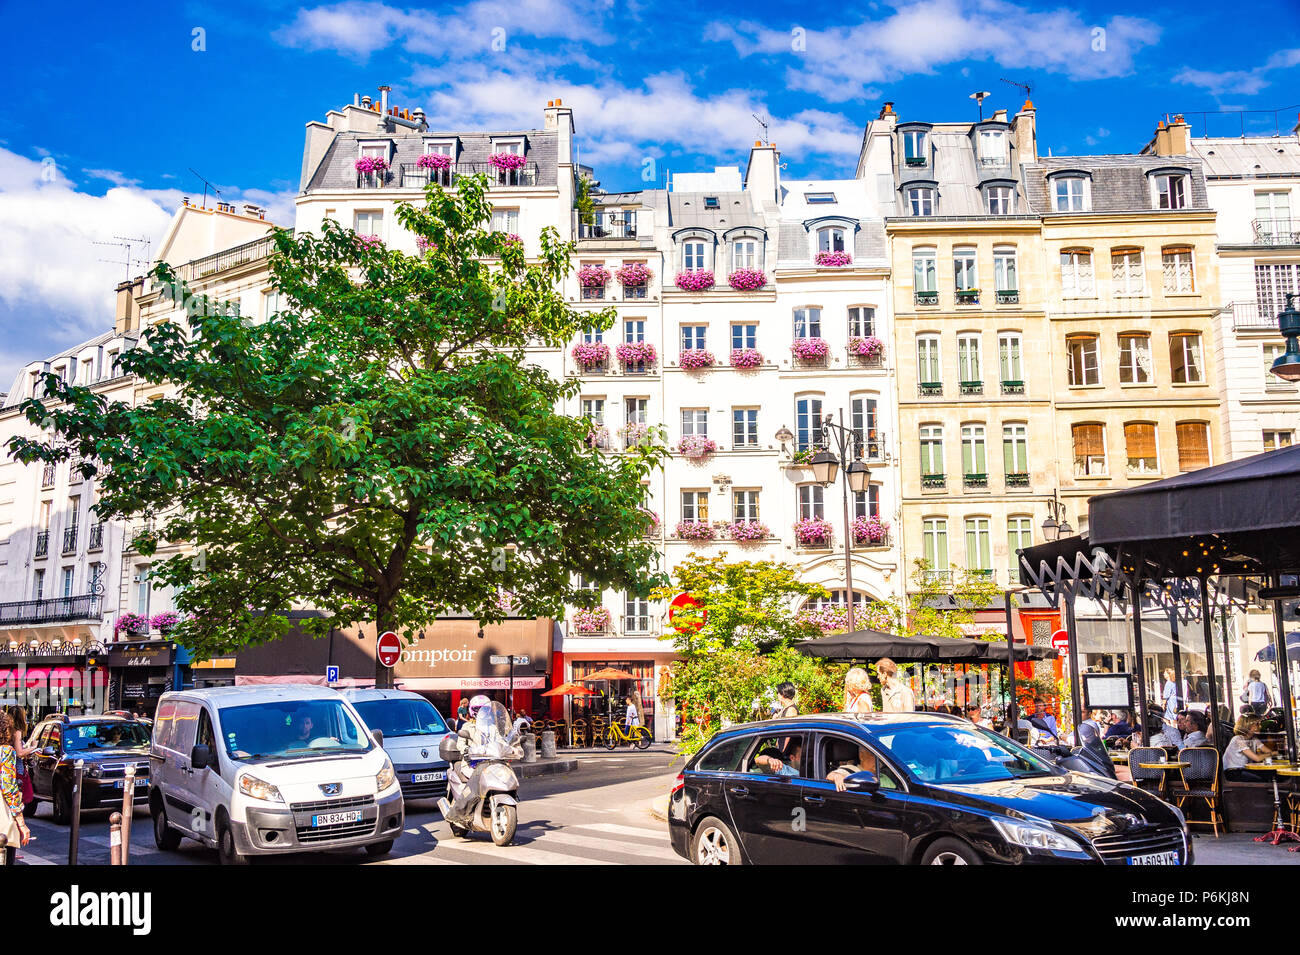 The beautiful streets of Saint-Germain-des-Prés in Paris, France Stock Photo